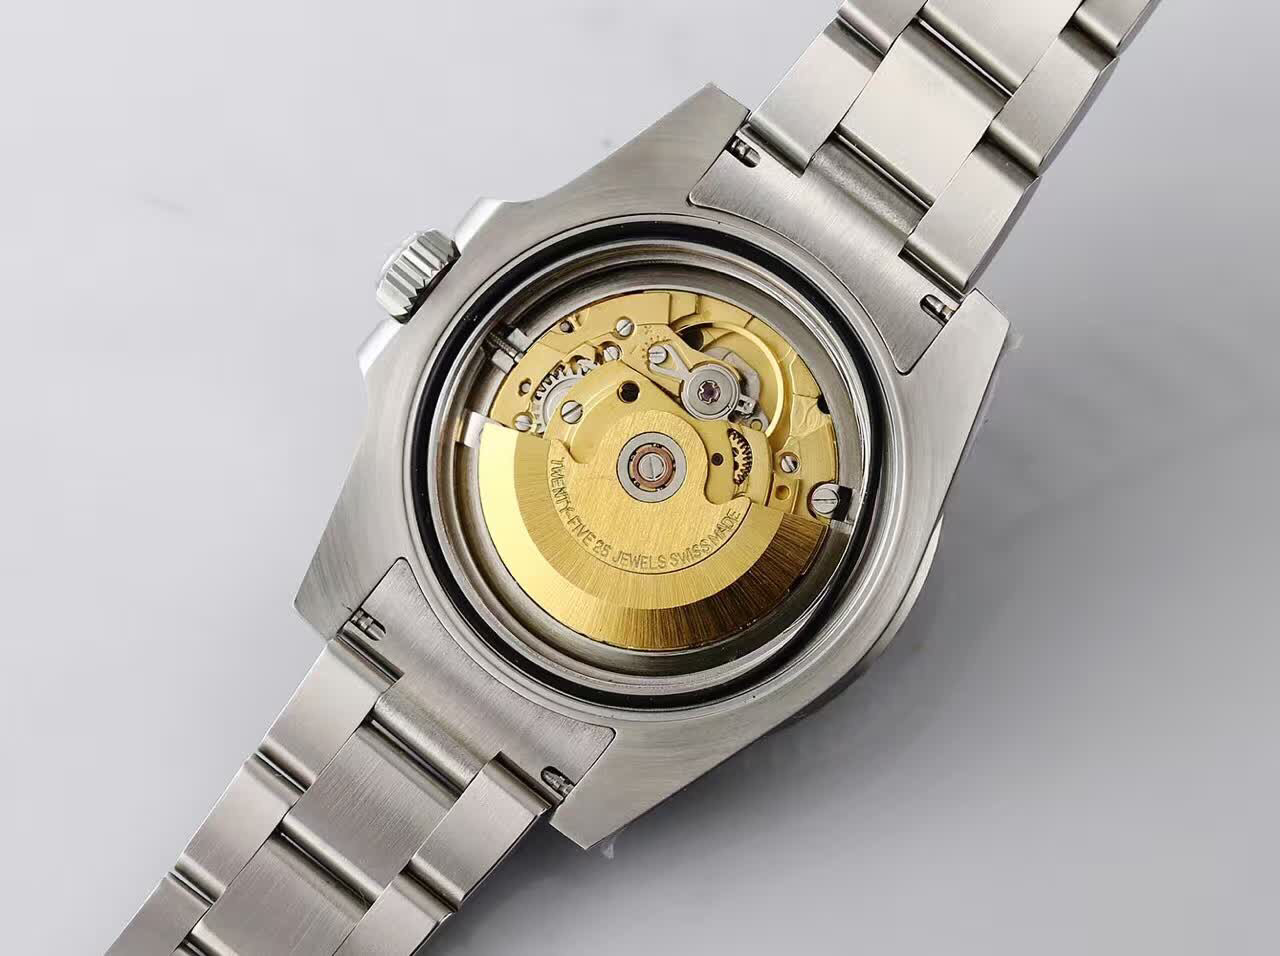 ロレックス サブマリーナ 2836 機械式 ムーブメント 40mm メンズ 腕時計 時計通販店舗